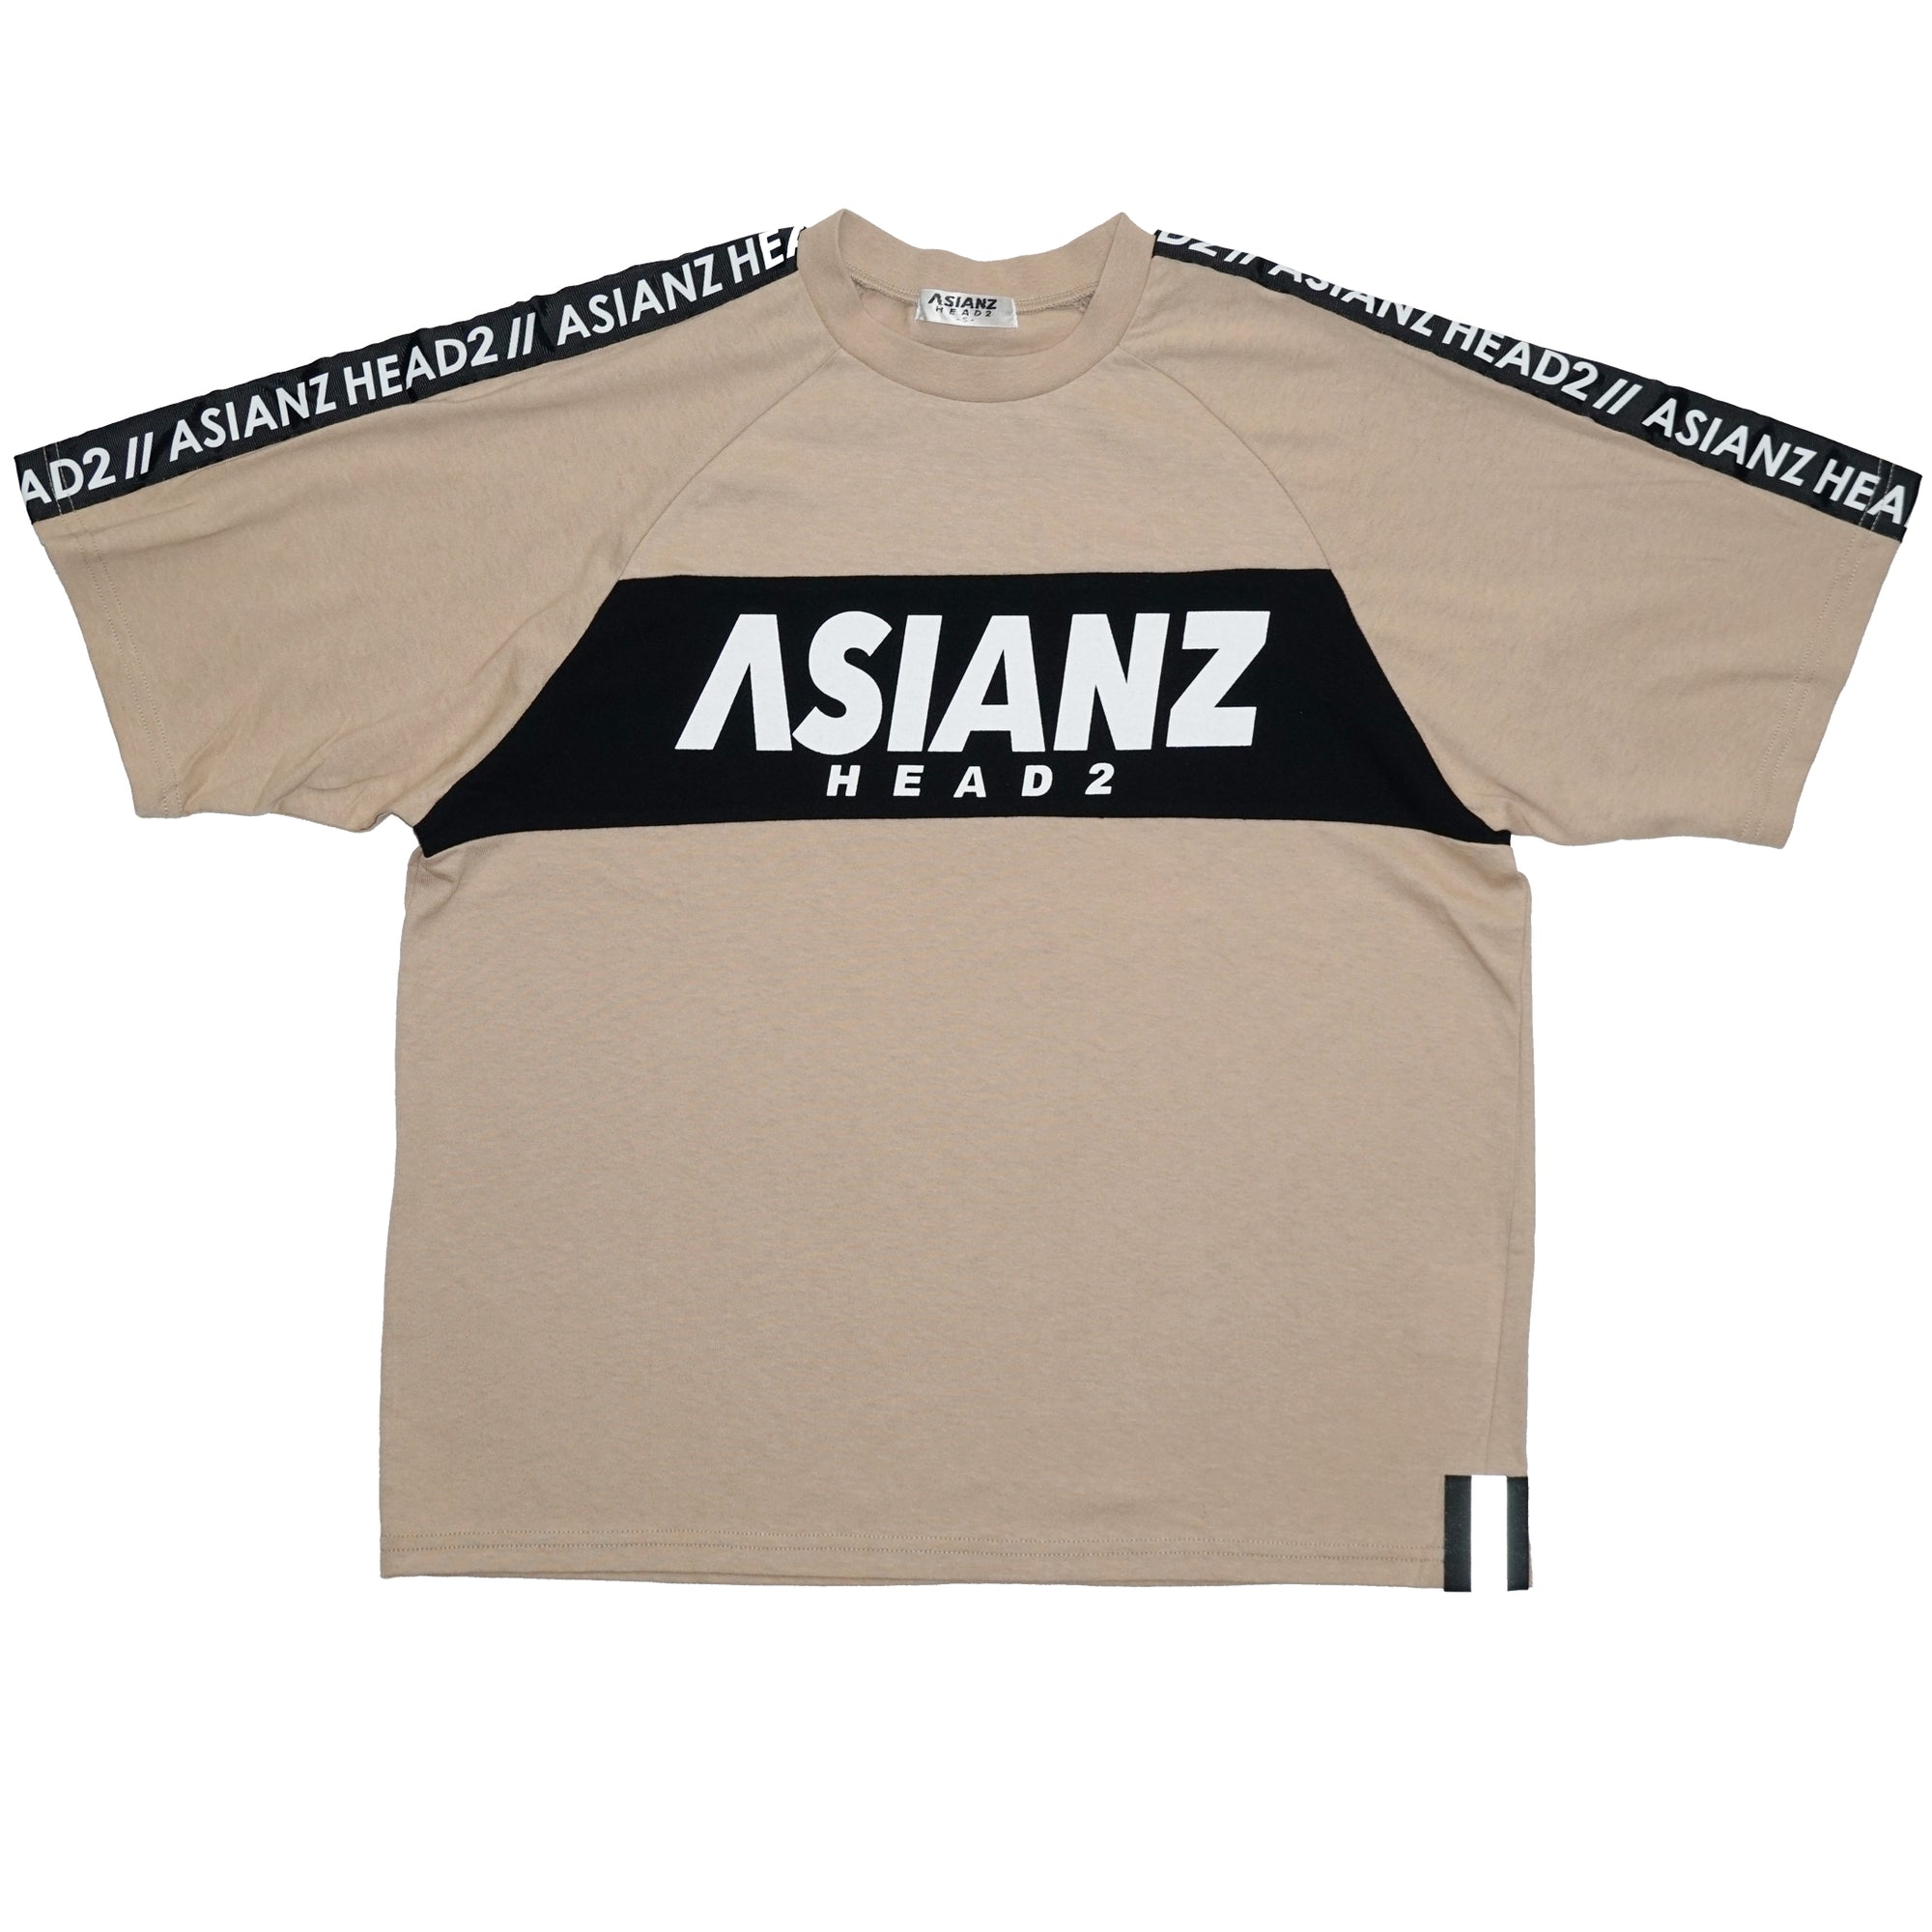 (40%オフ! セール商品)  ASIANZ HEAD2 フロント切替袖ロゴラインTシャツ キッズウェアー